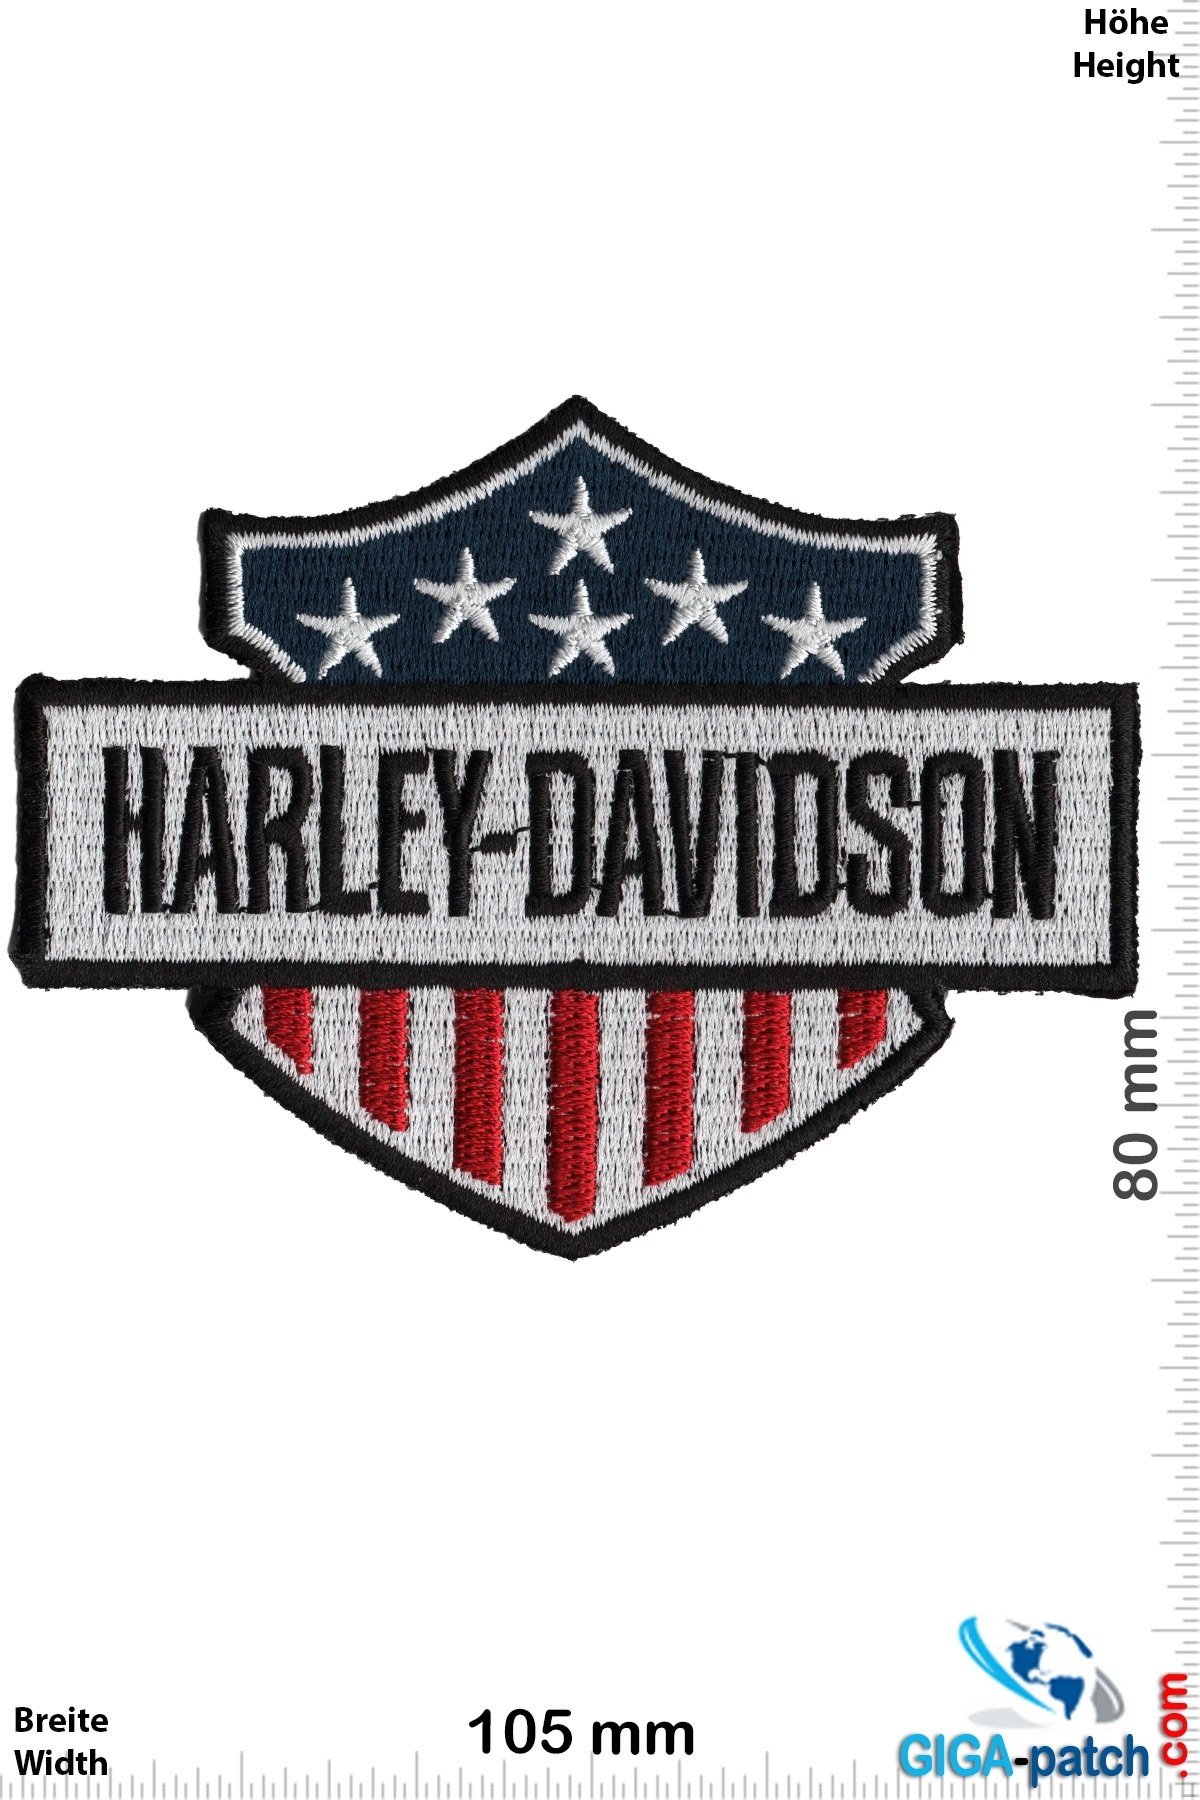 Harley Davidson Harley Davidson - USA - Wappen